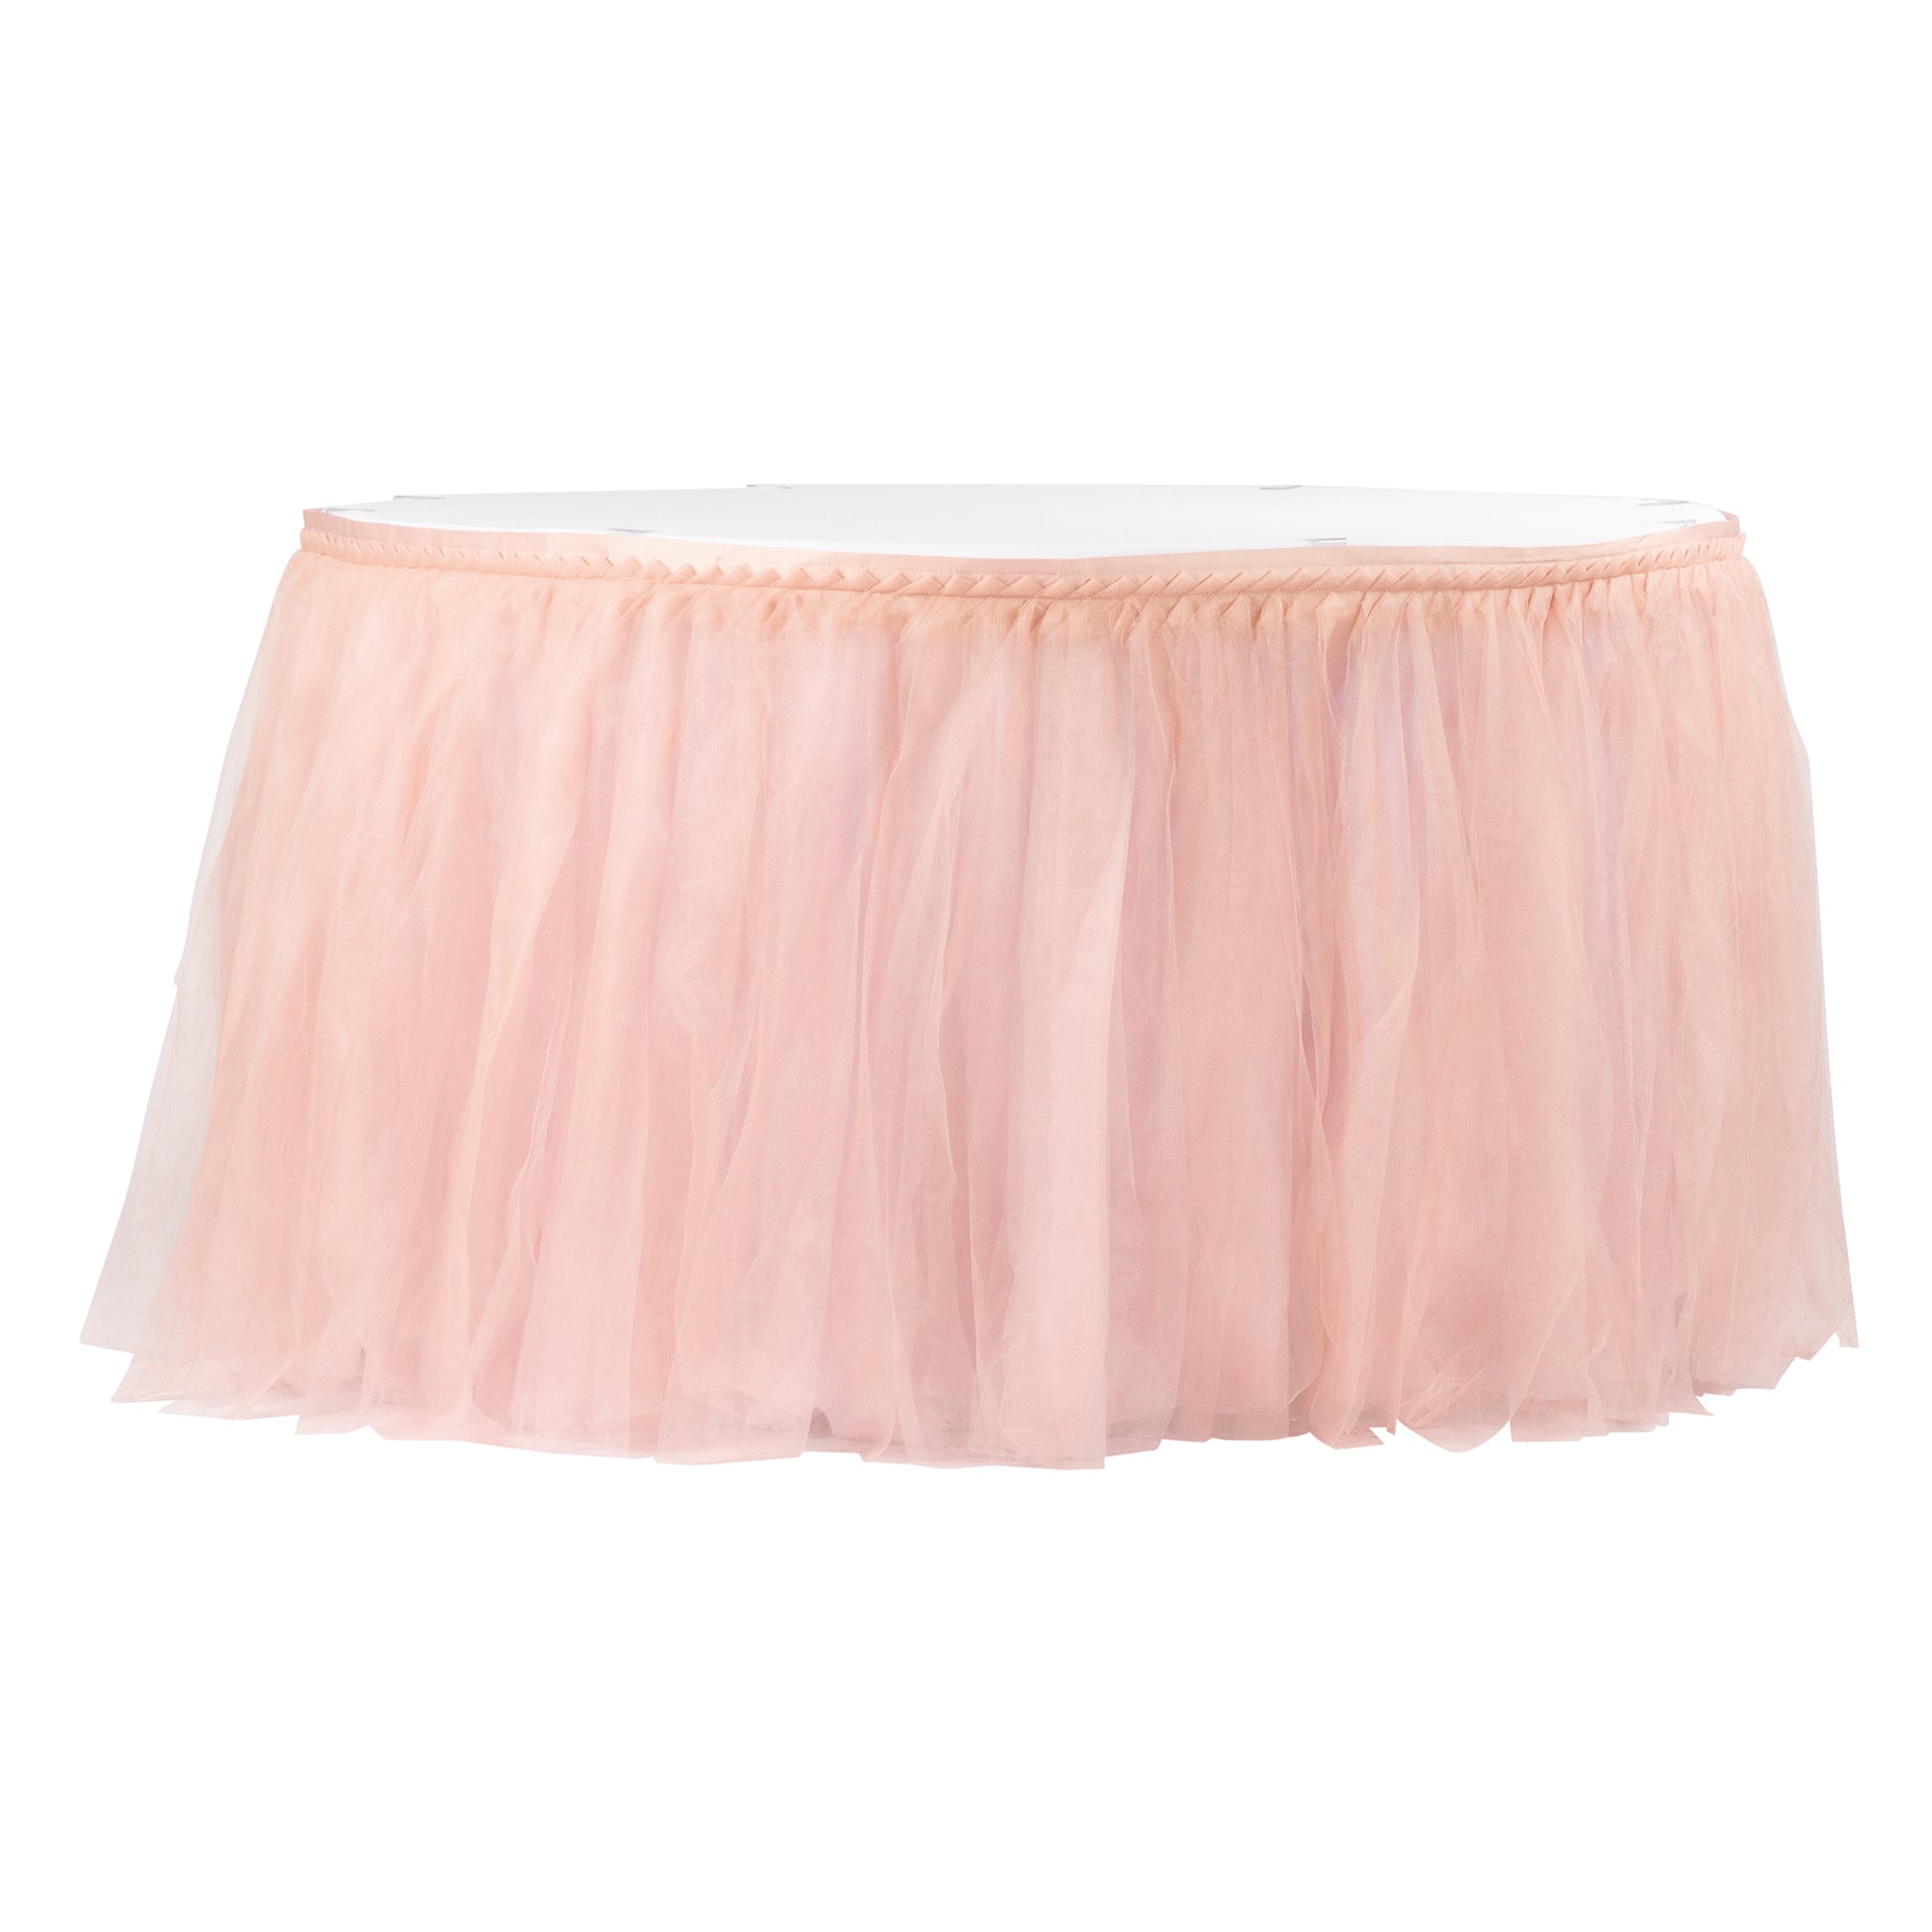 Tulle Tutu 17ft Table Skirt - Blush/Rose Gold - CV Linens